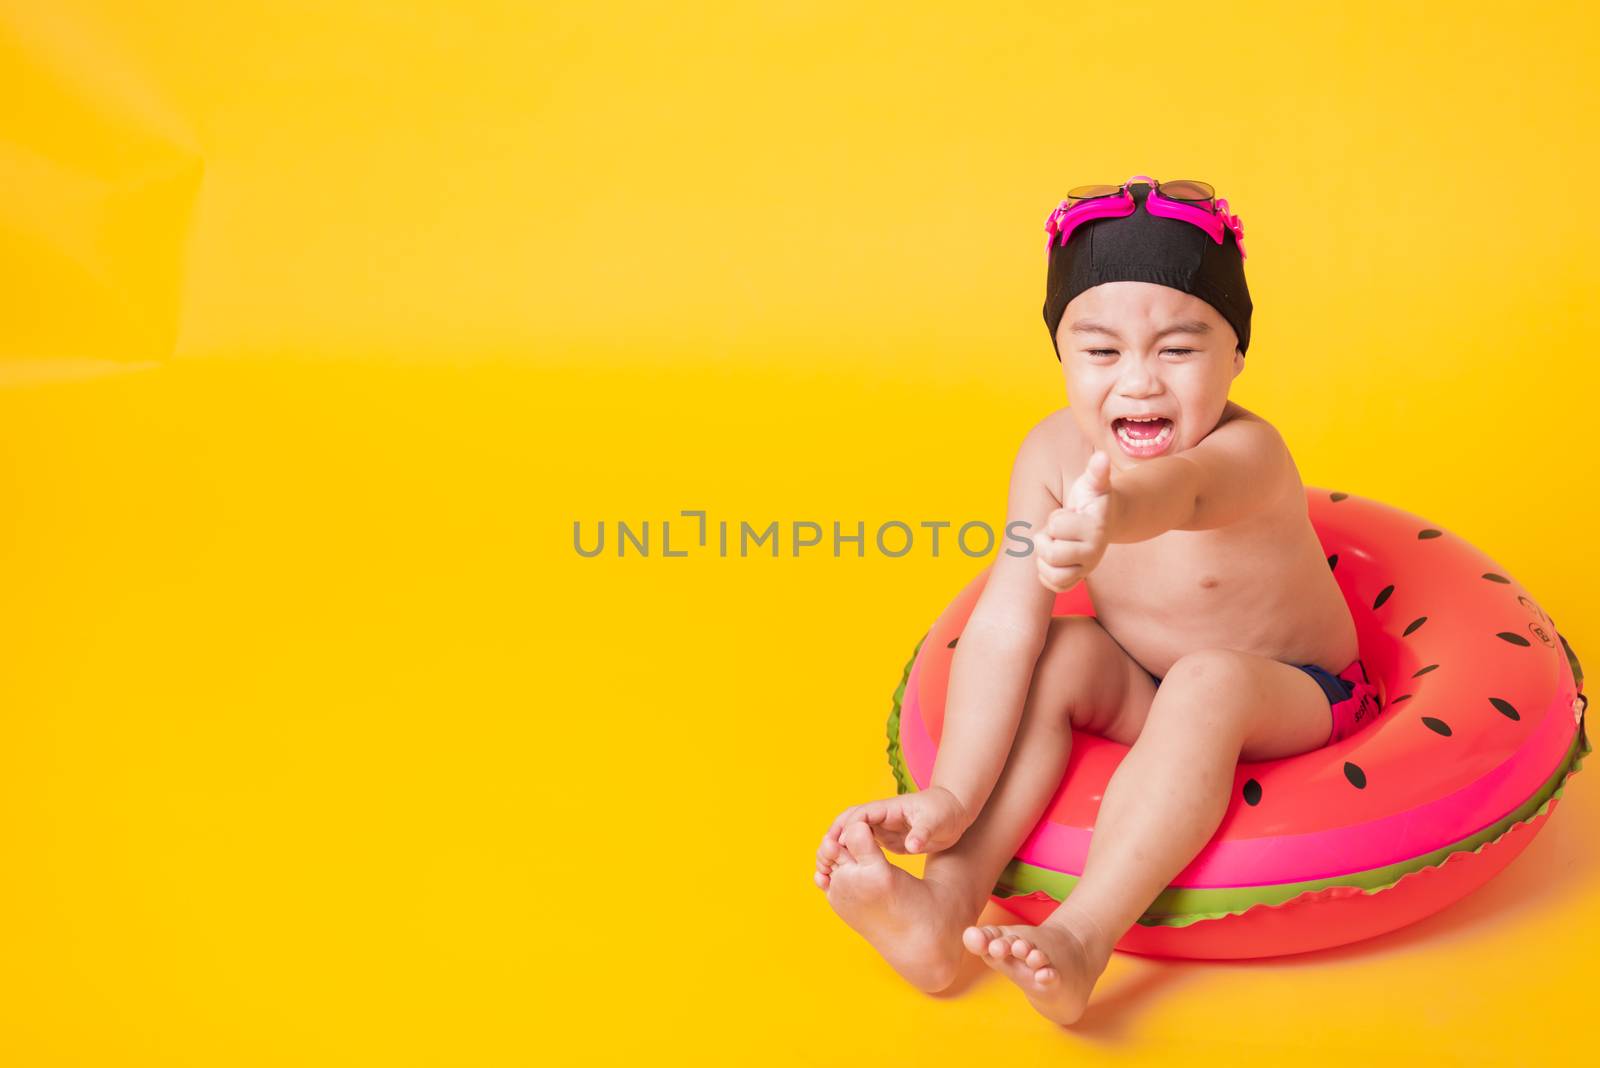 Kid hav fun sit in inflatable by Sorapop